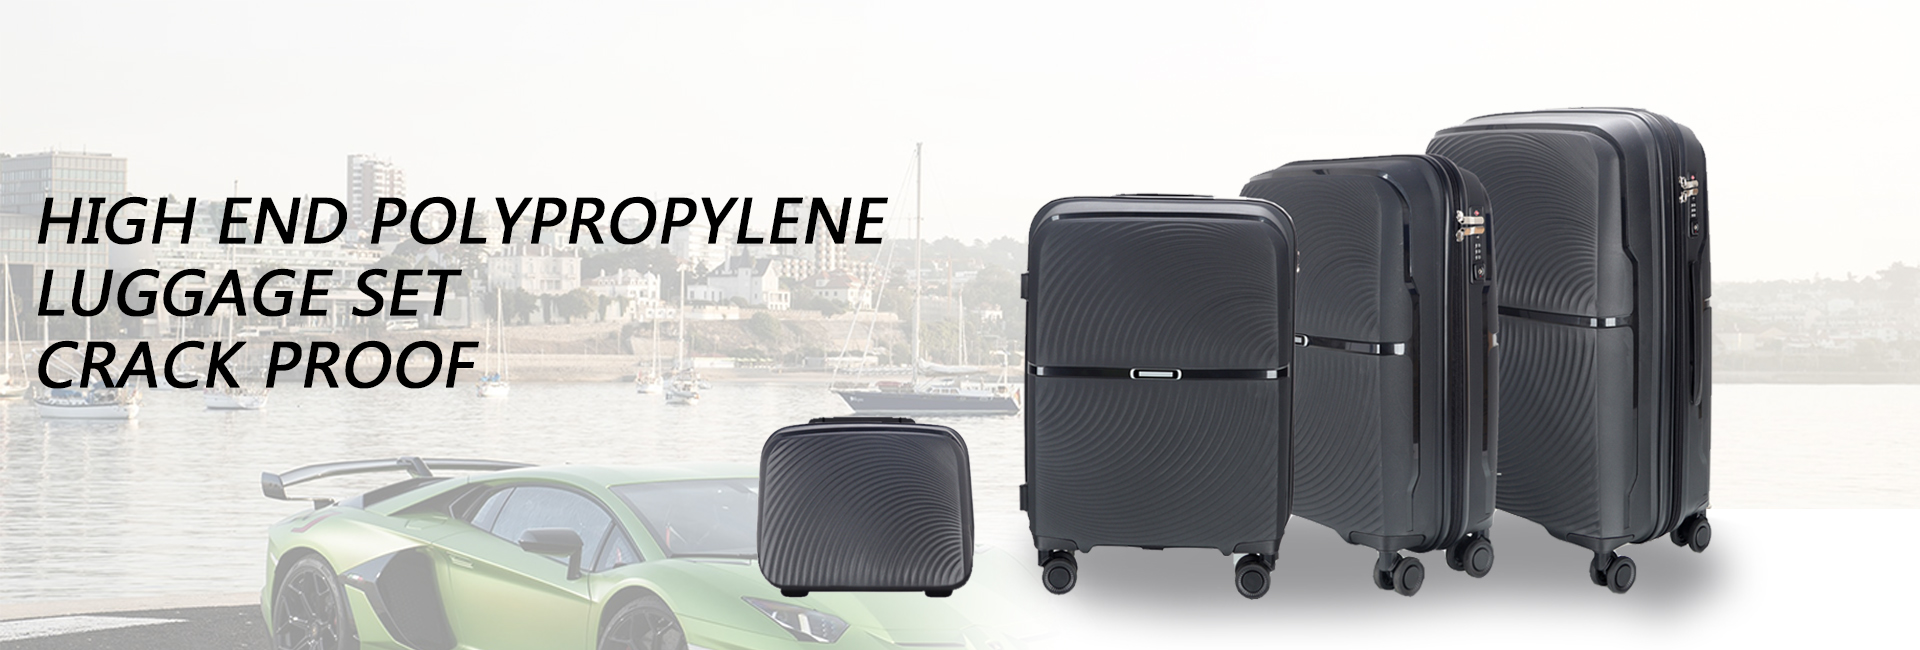 polypropylene luggage